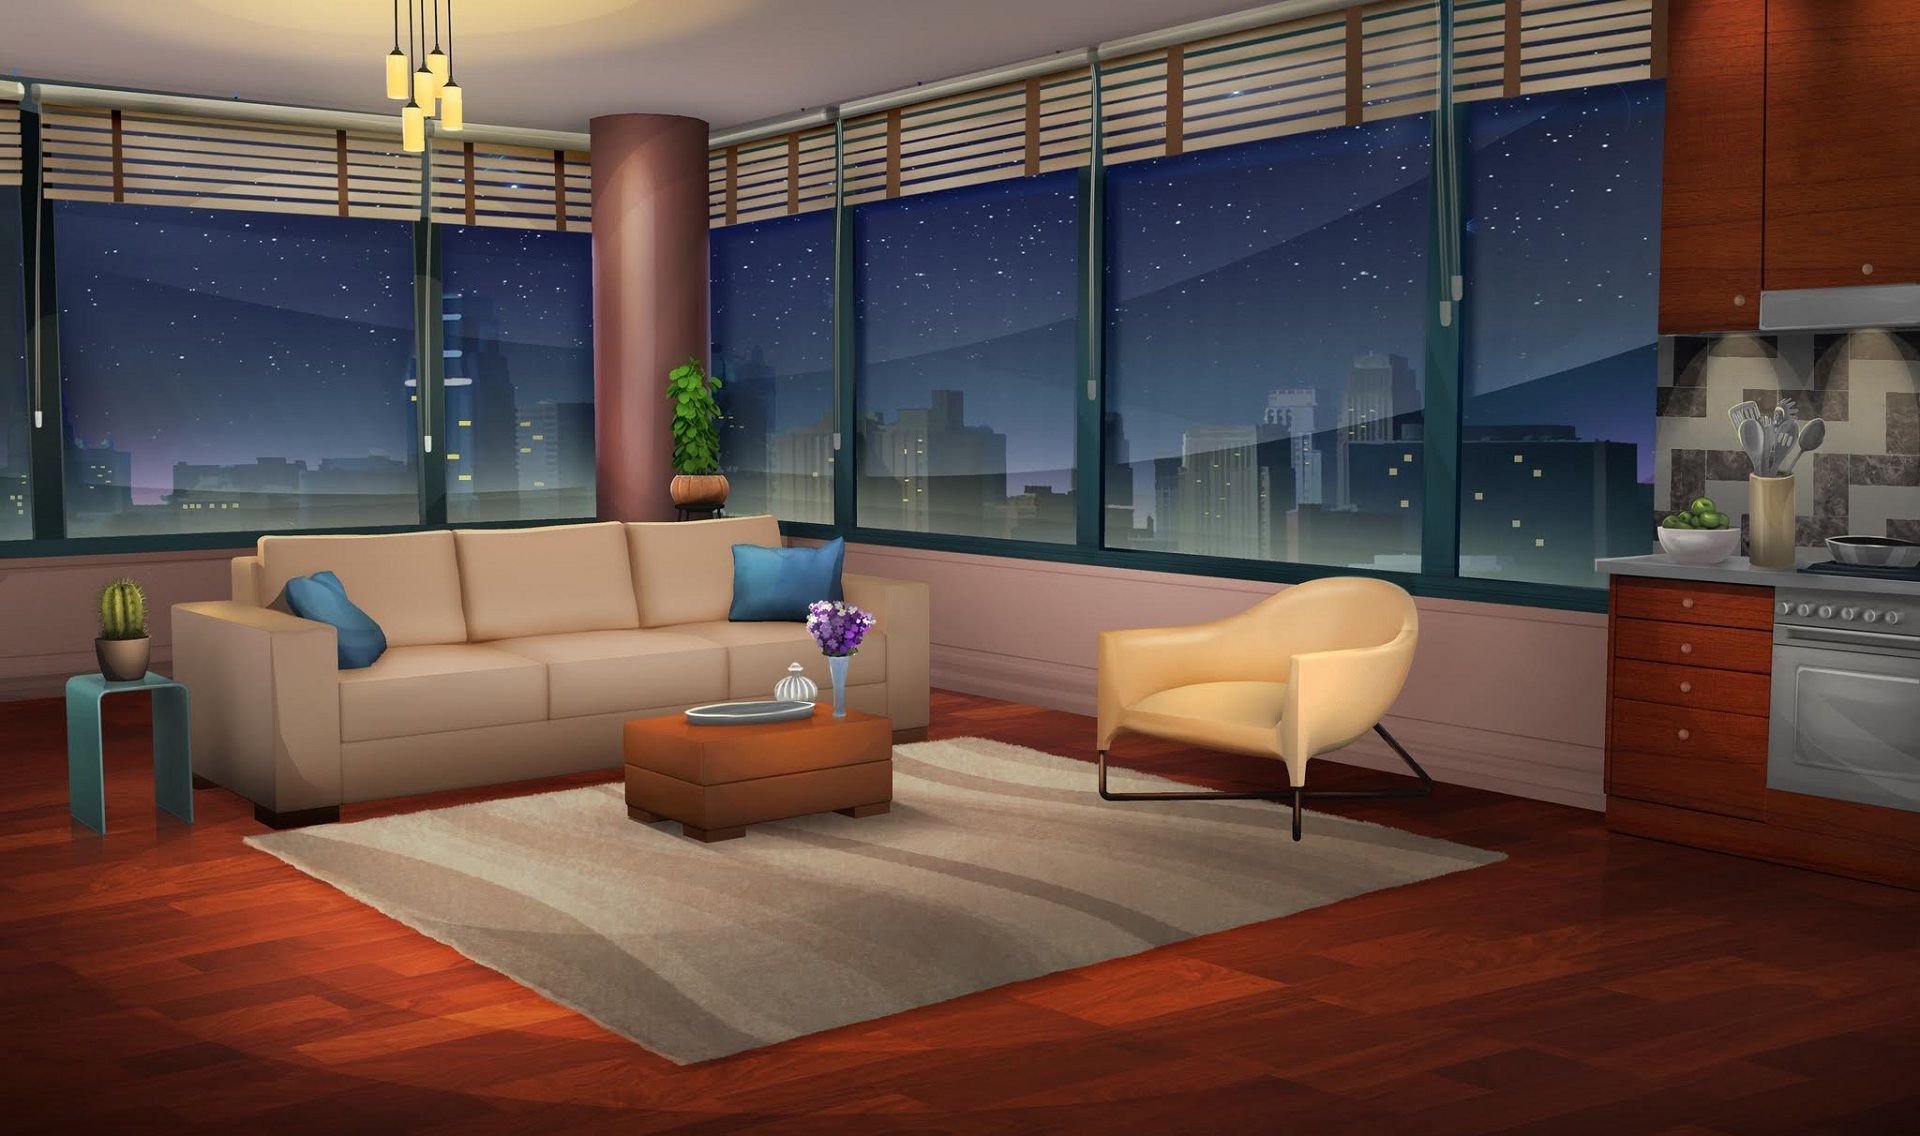 Điểm nhấn của căn phòng bạn sẽ là hình nền căn hộ anime độc đáo này. Với những tông màu pastel và độ phân giải cao, bạn sẽ cảm thấy như đang trong một câu chuyện anime thú vị. Nhấp chuột để cập nhật ngay hôm nay.